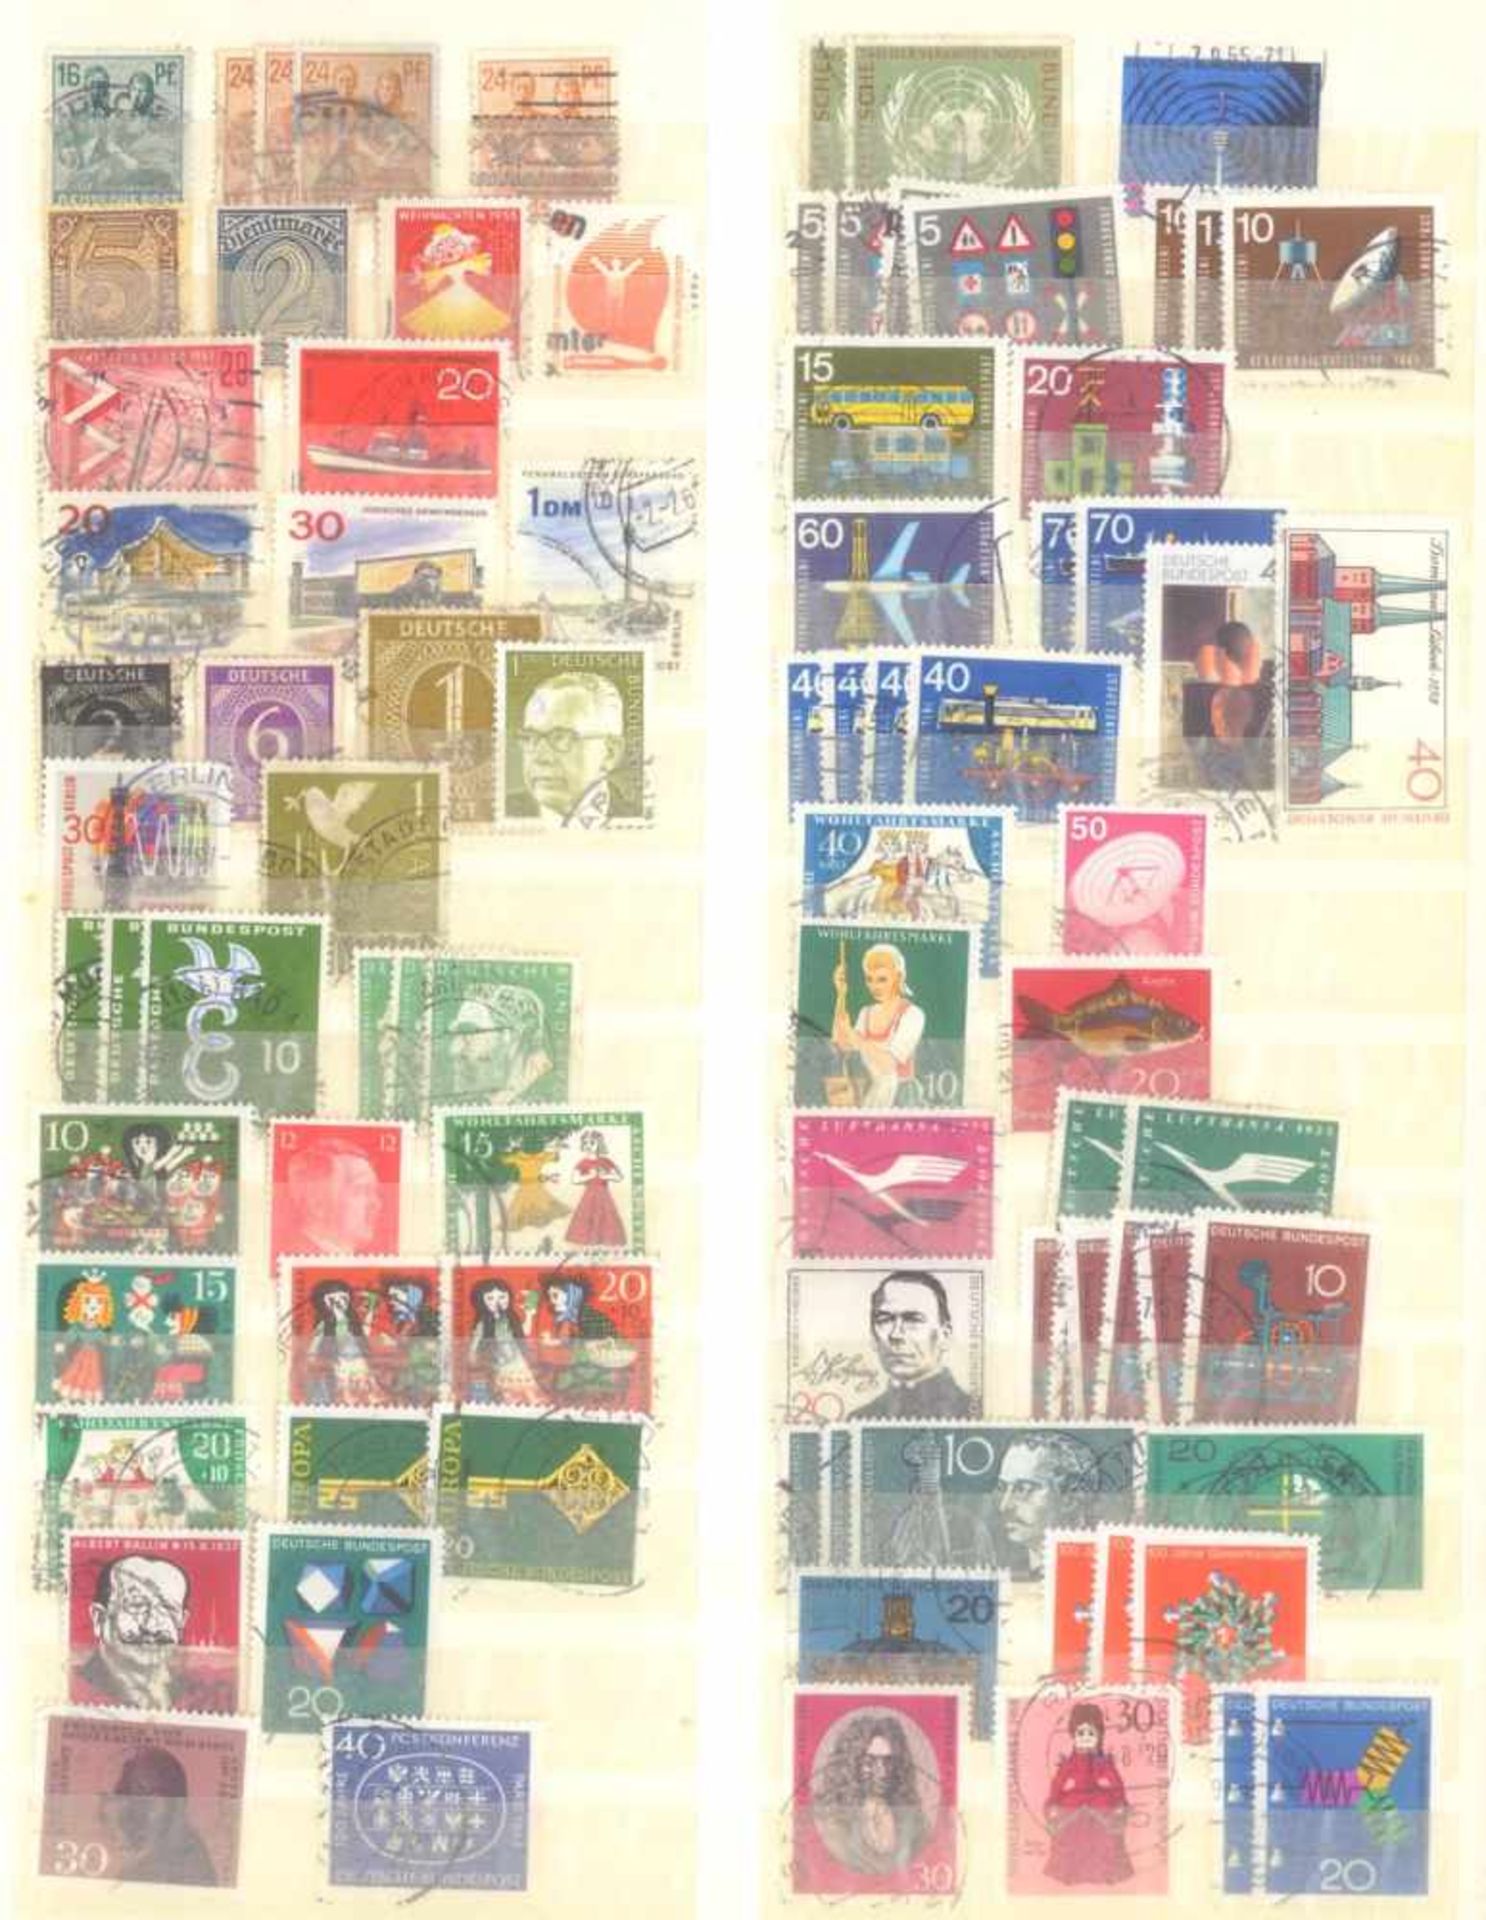 Kleiner Briefmarkennachlass Alle WeltIn 5 Steckalben, gestempelte Marken der BRD, Berlin, etwas - Image 12 of 12